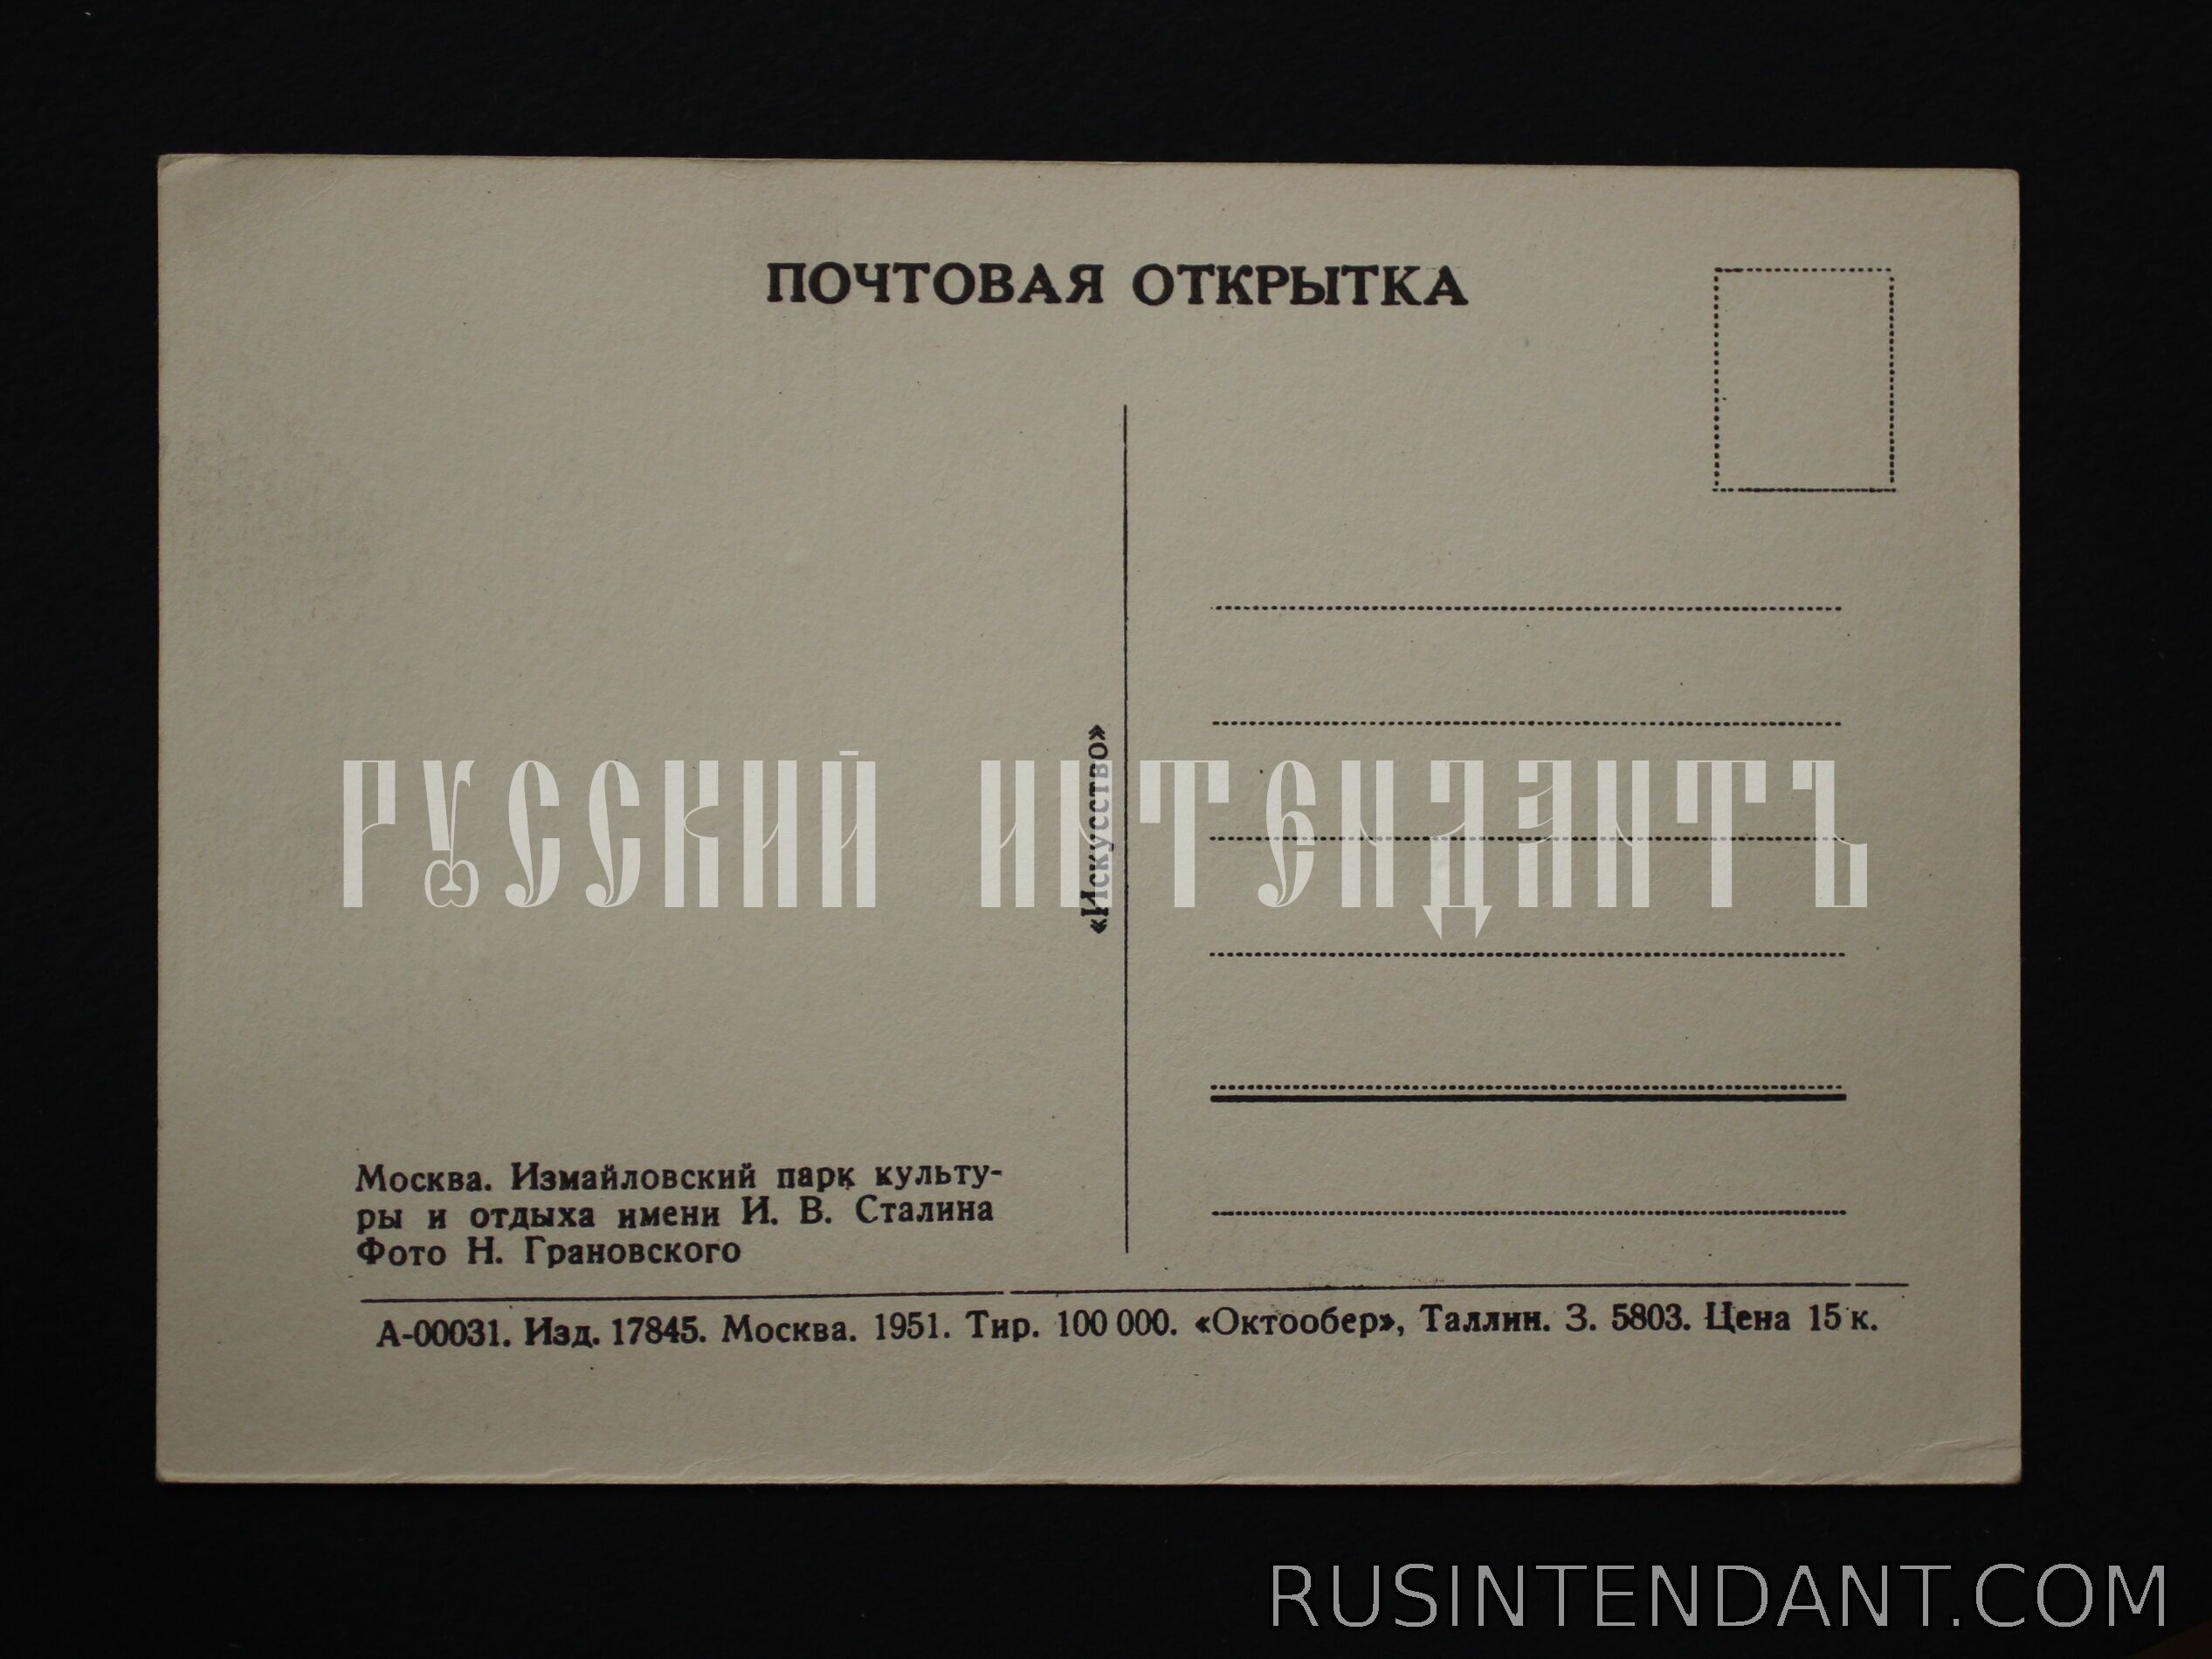 Фото 2: Почтовая карточка «Парк культуры и отдыха имени И.В. Сталина» 